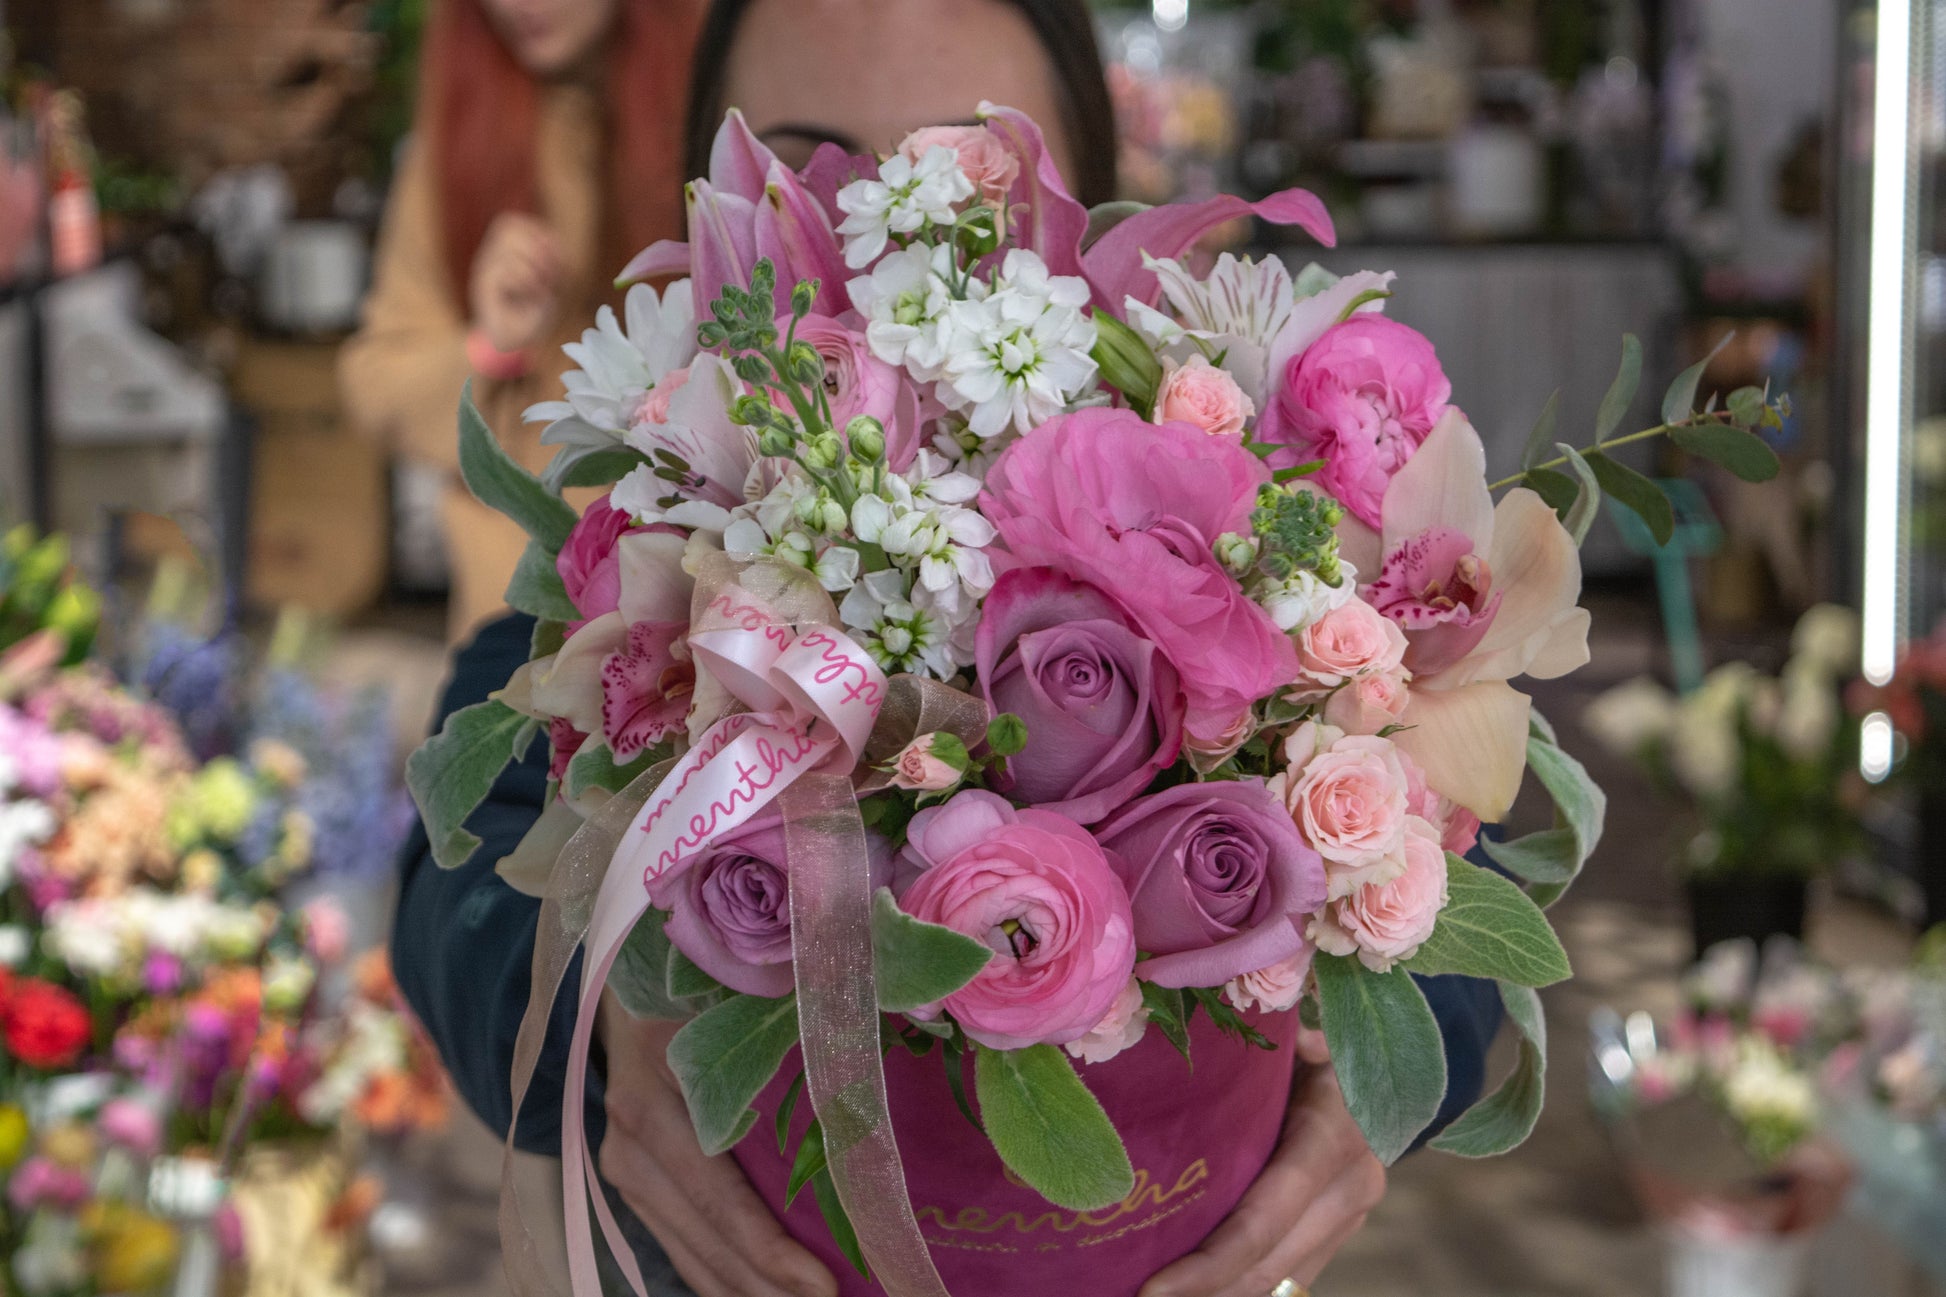 Zâmbete în culori pastelate: crizanteme și flori roz și alb, exprimând bucuria și fericirea, surprinse în această imagine, cu livrare GRATUITĂ în Resita.